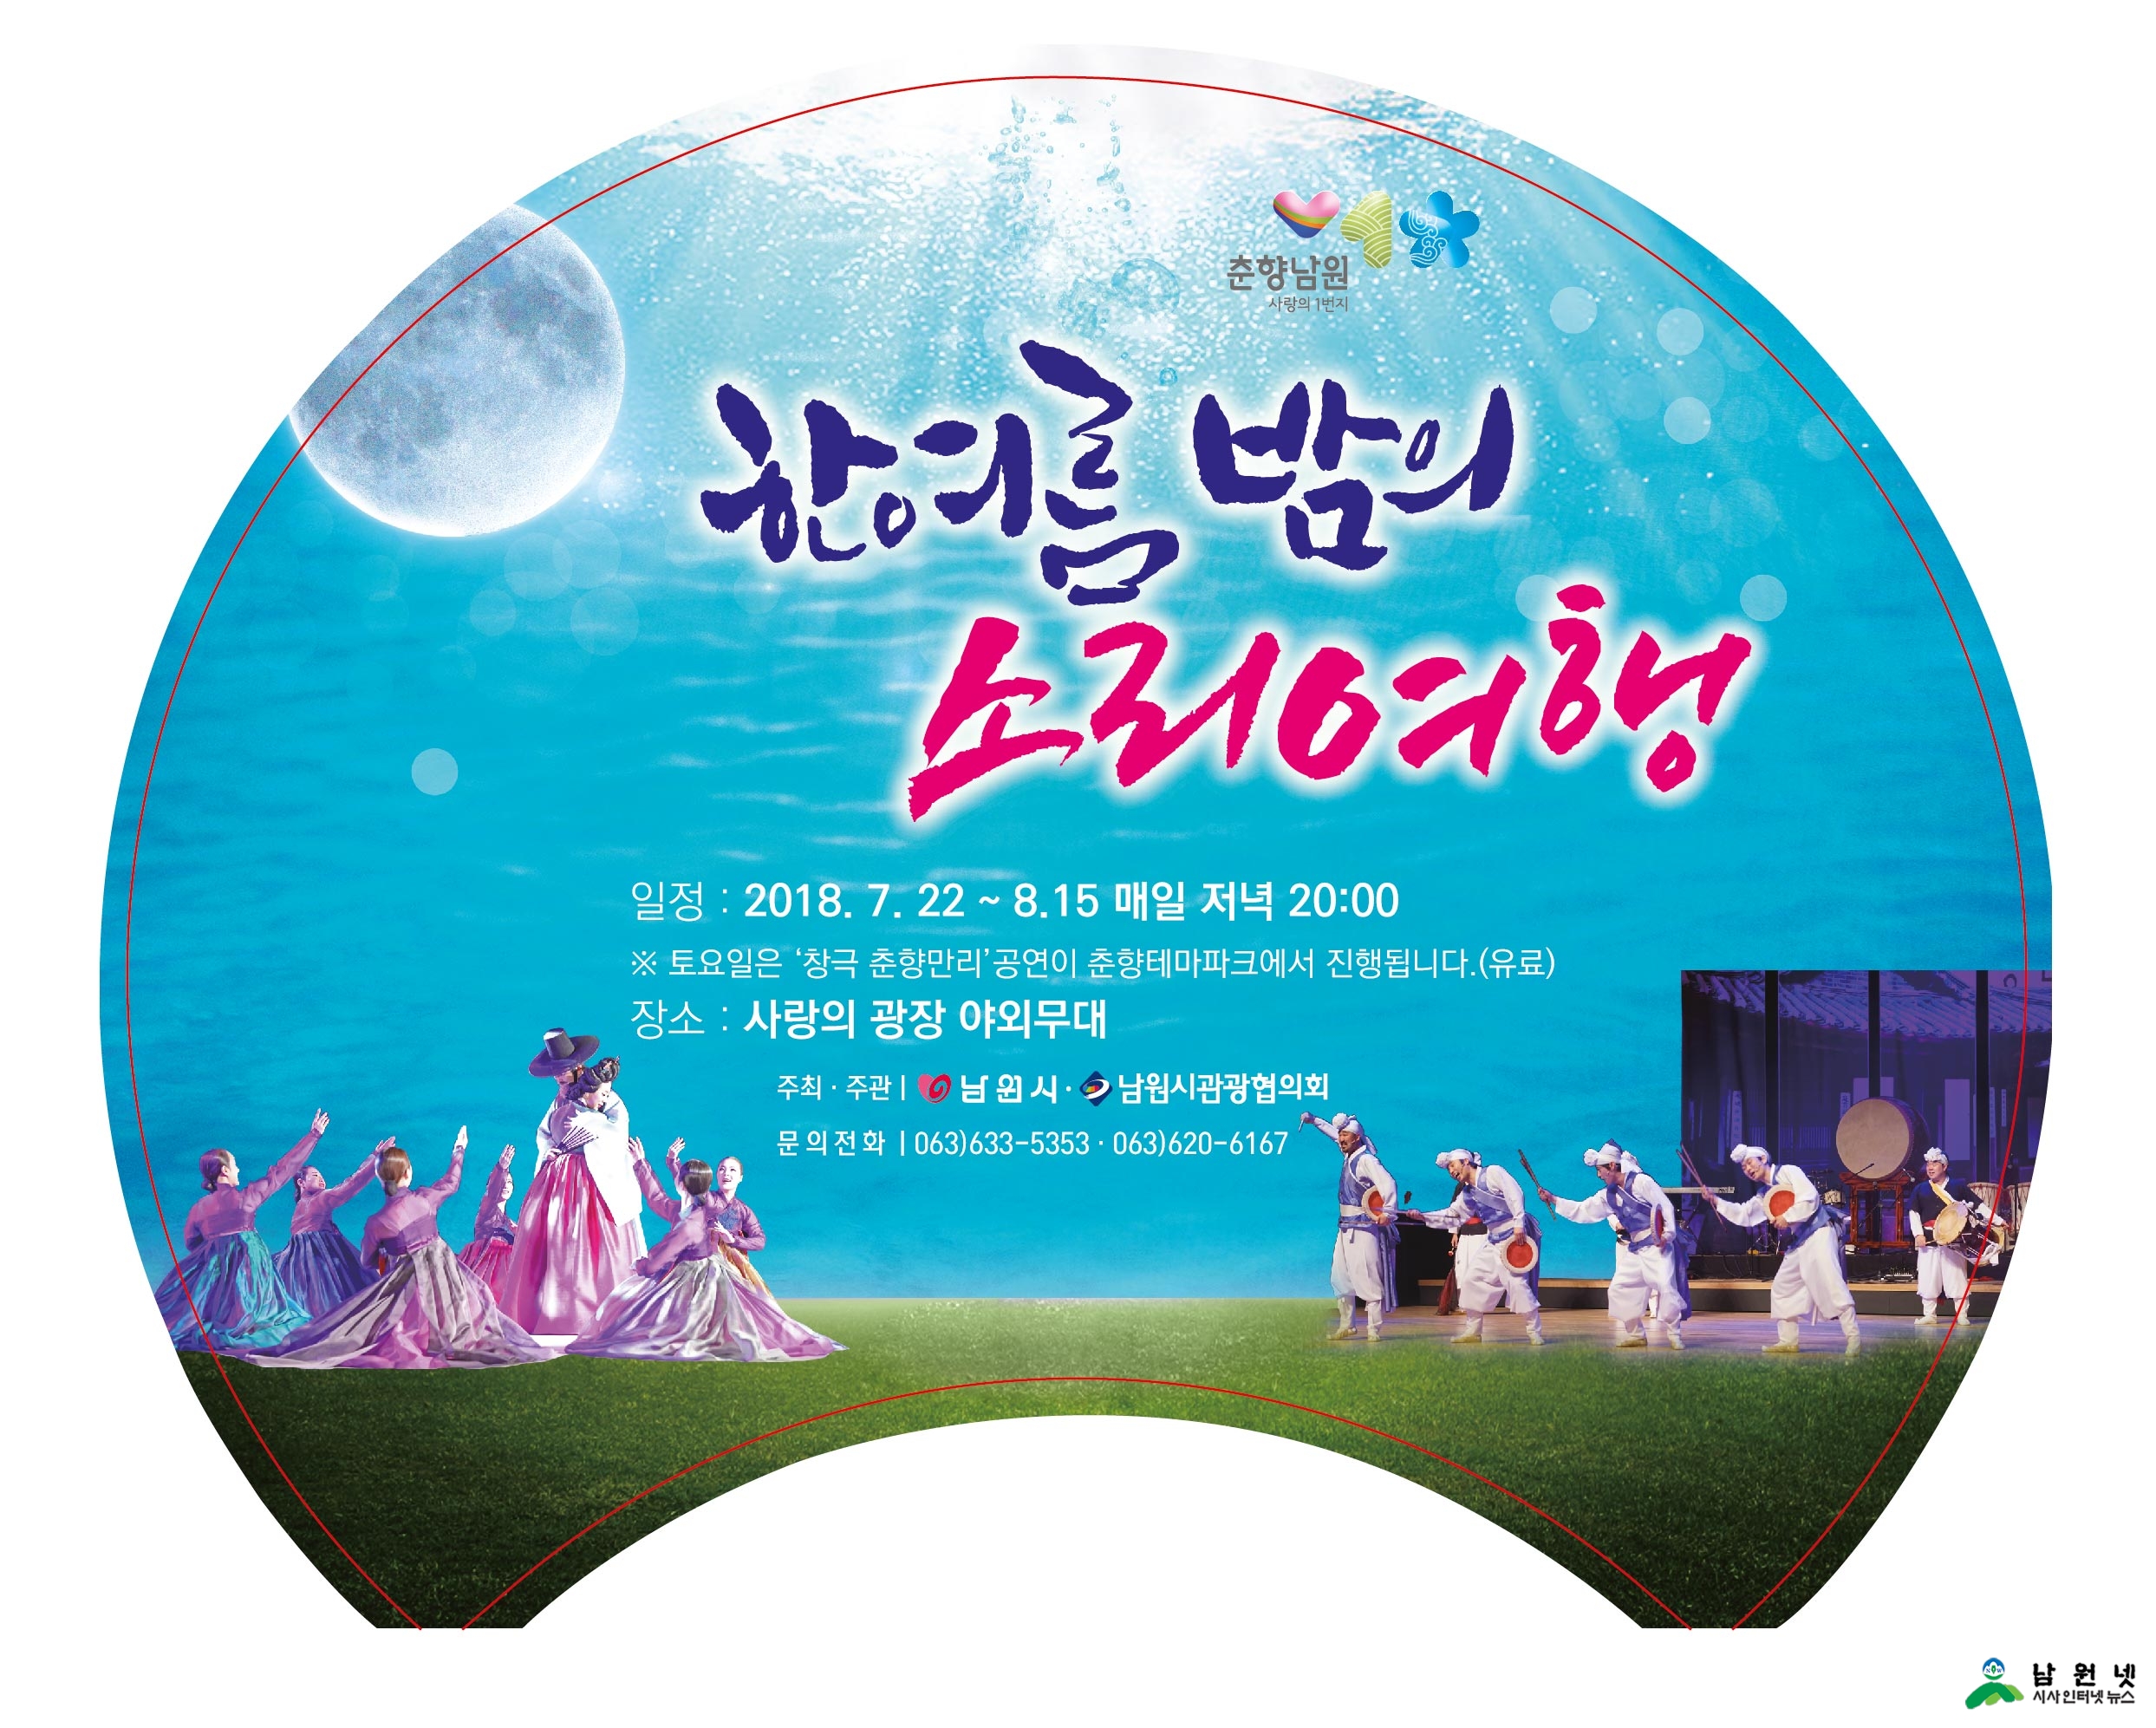 0706문화예술과-남원시 한 여름밤의 소리여행 상설공연 시작1 (왕부채).jpg